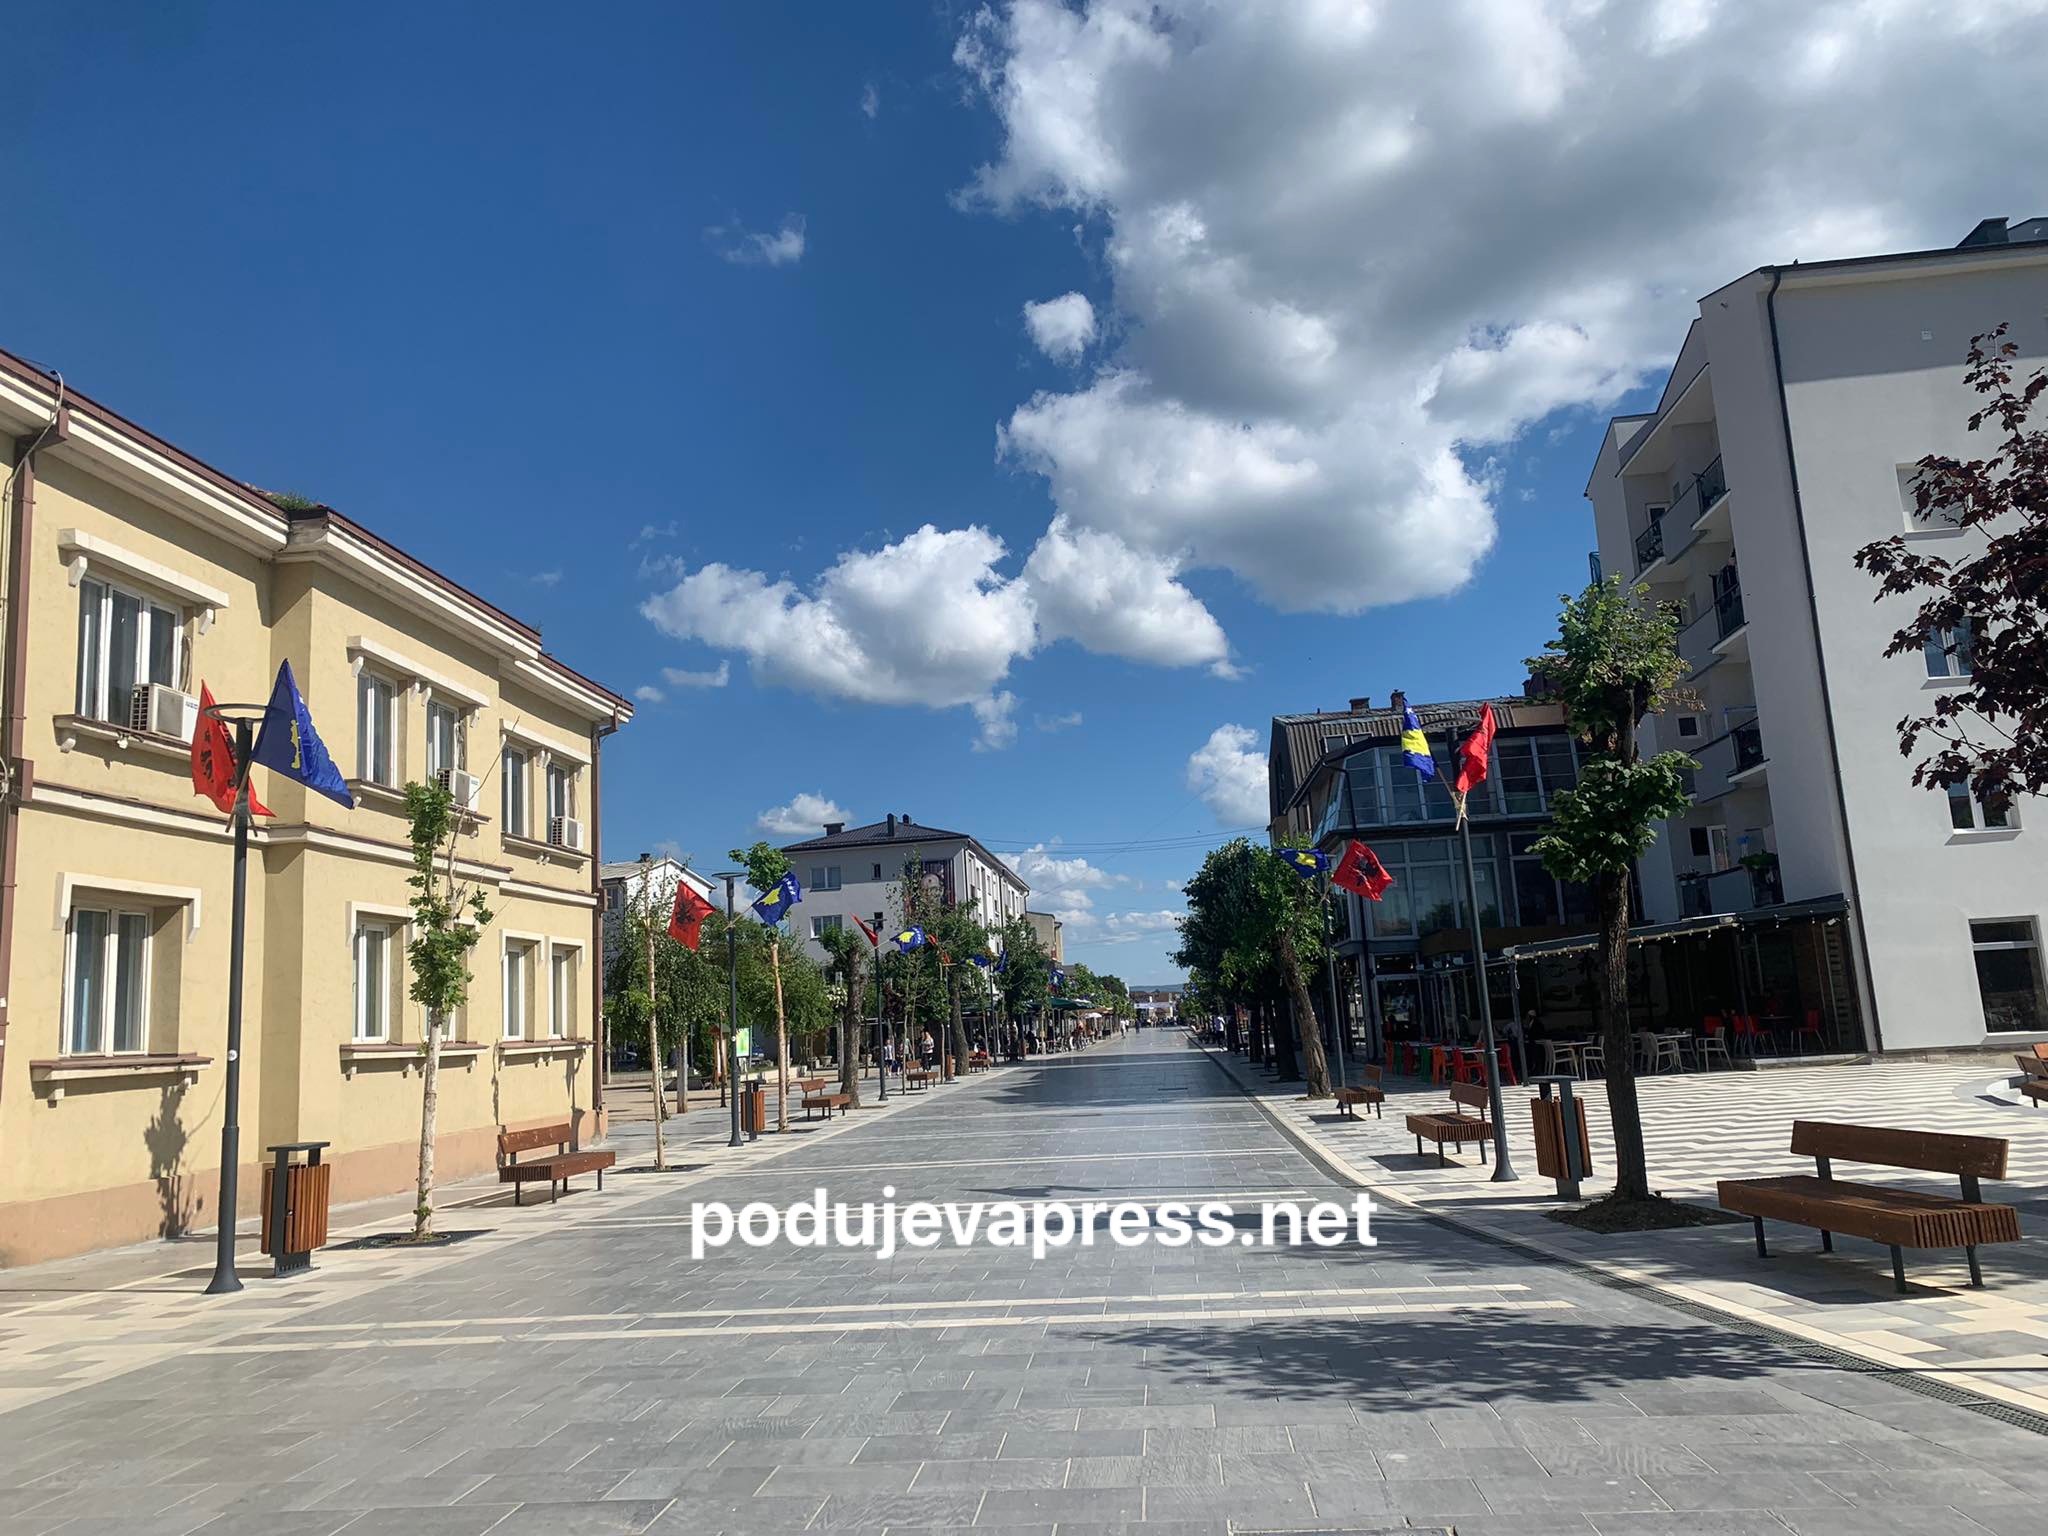  Komuna e Podujevës njoftim për të gjithë qytetarët